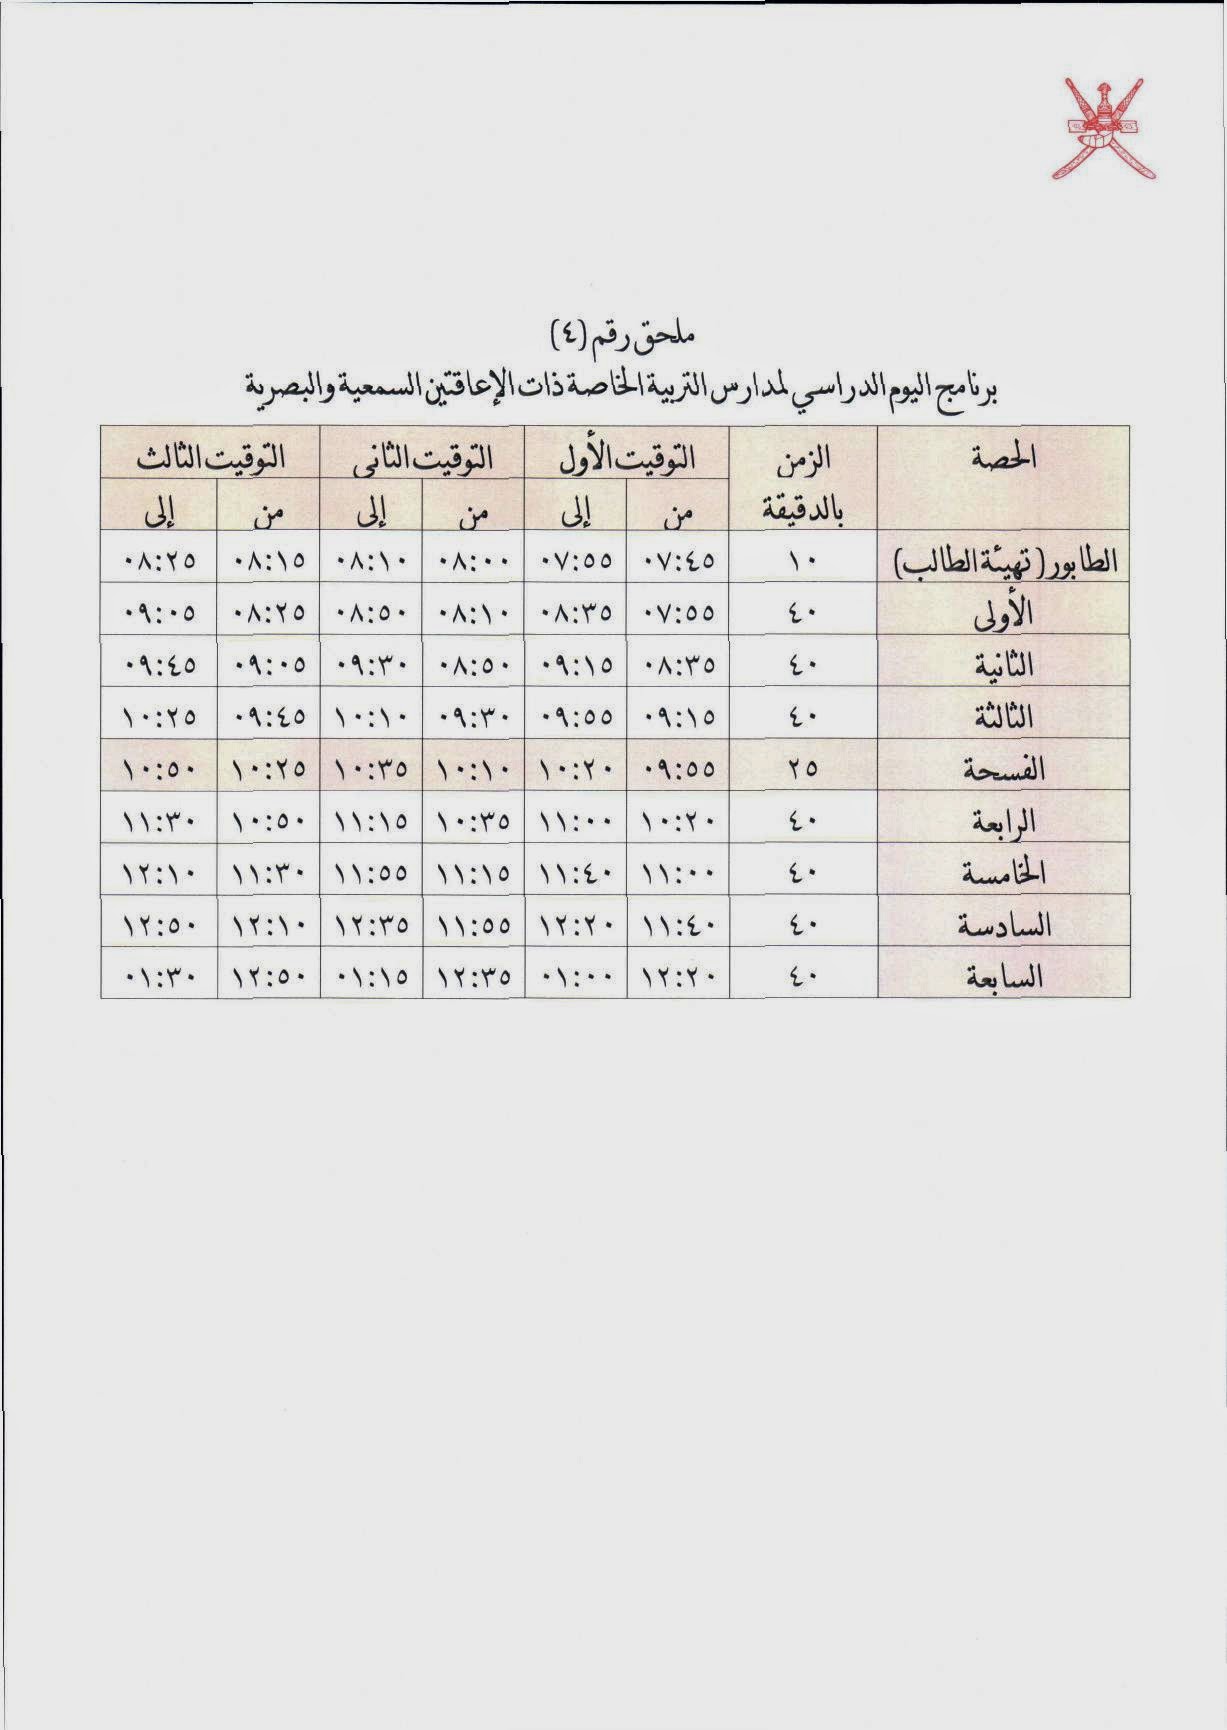 التقويم الدراسي في سلطنة عمان مع الاجازات 2014/2015